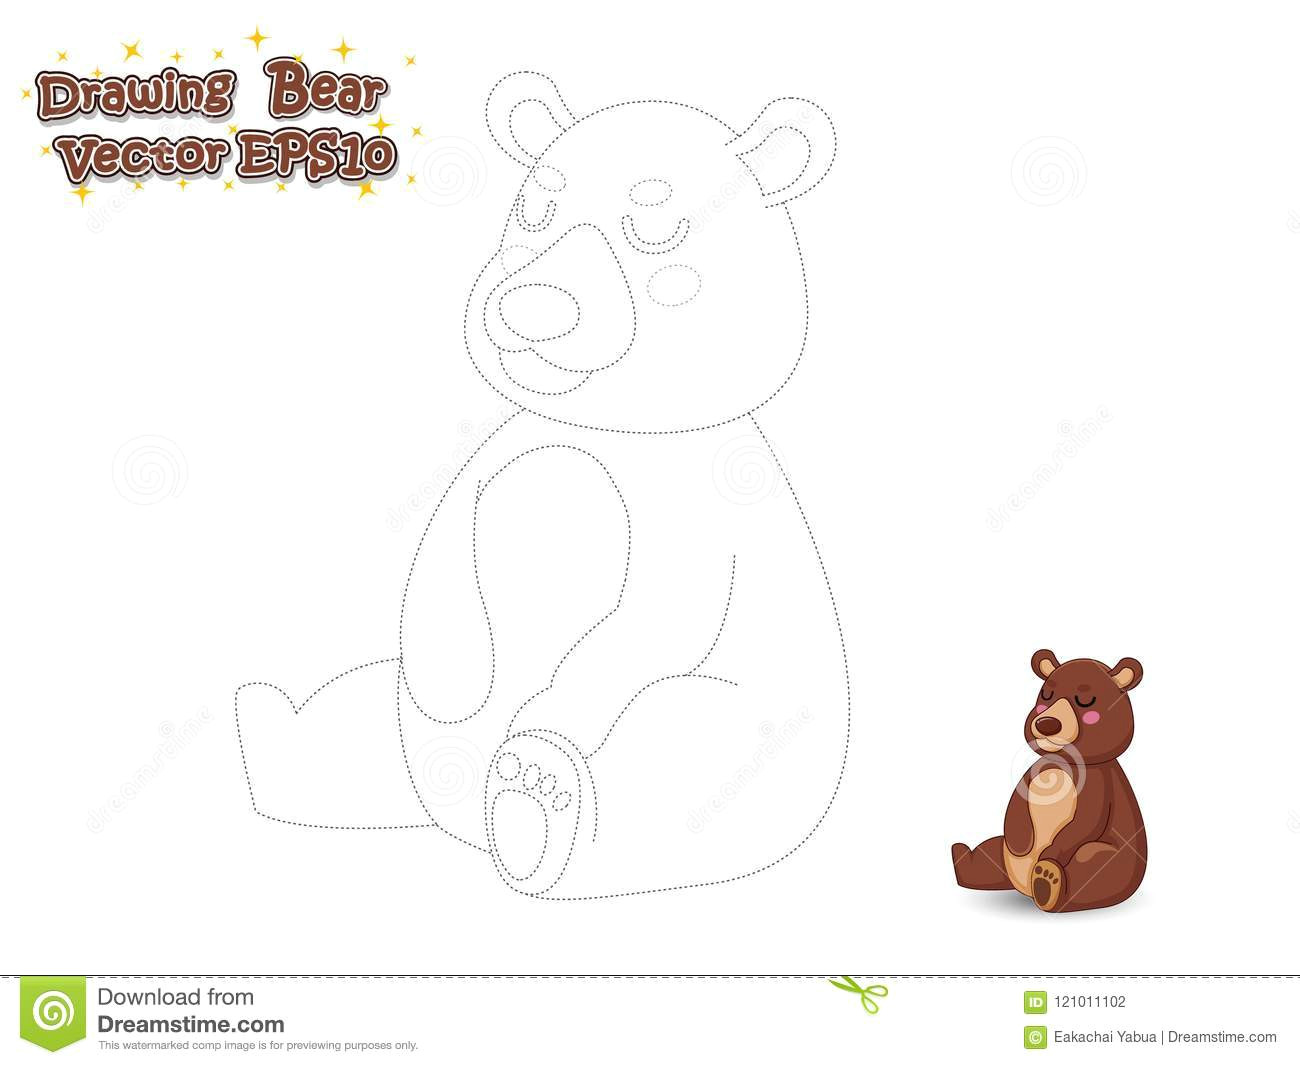 Drawing Cartoon Koala Drawing and Paint Cute Bear Cartoon Educational Game for Kids